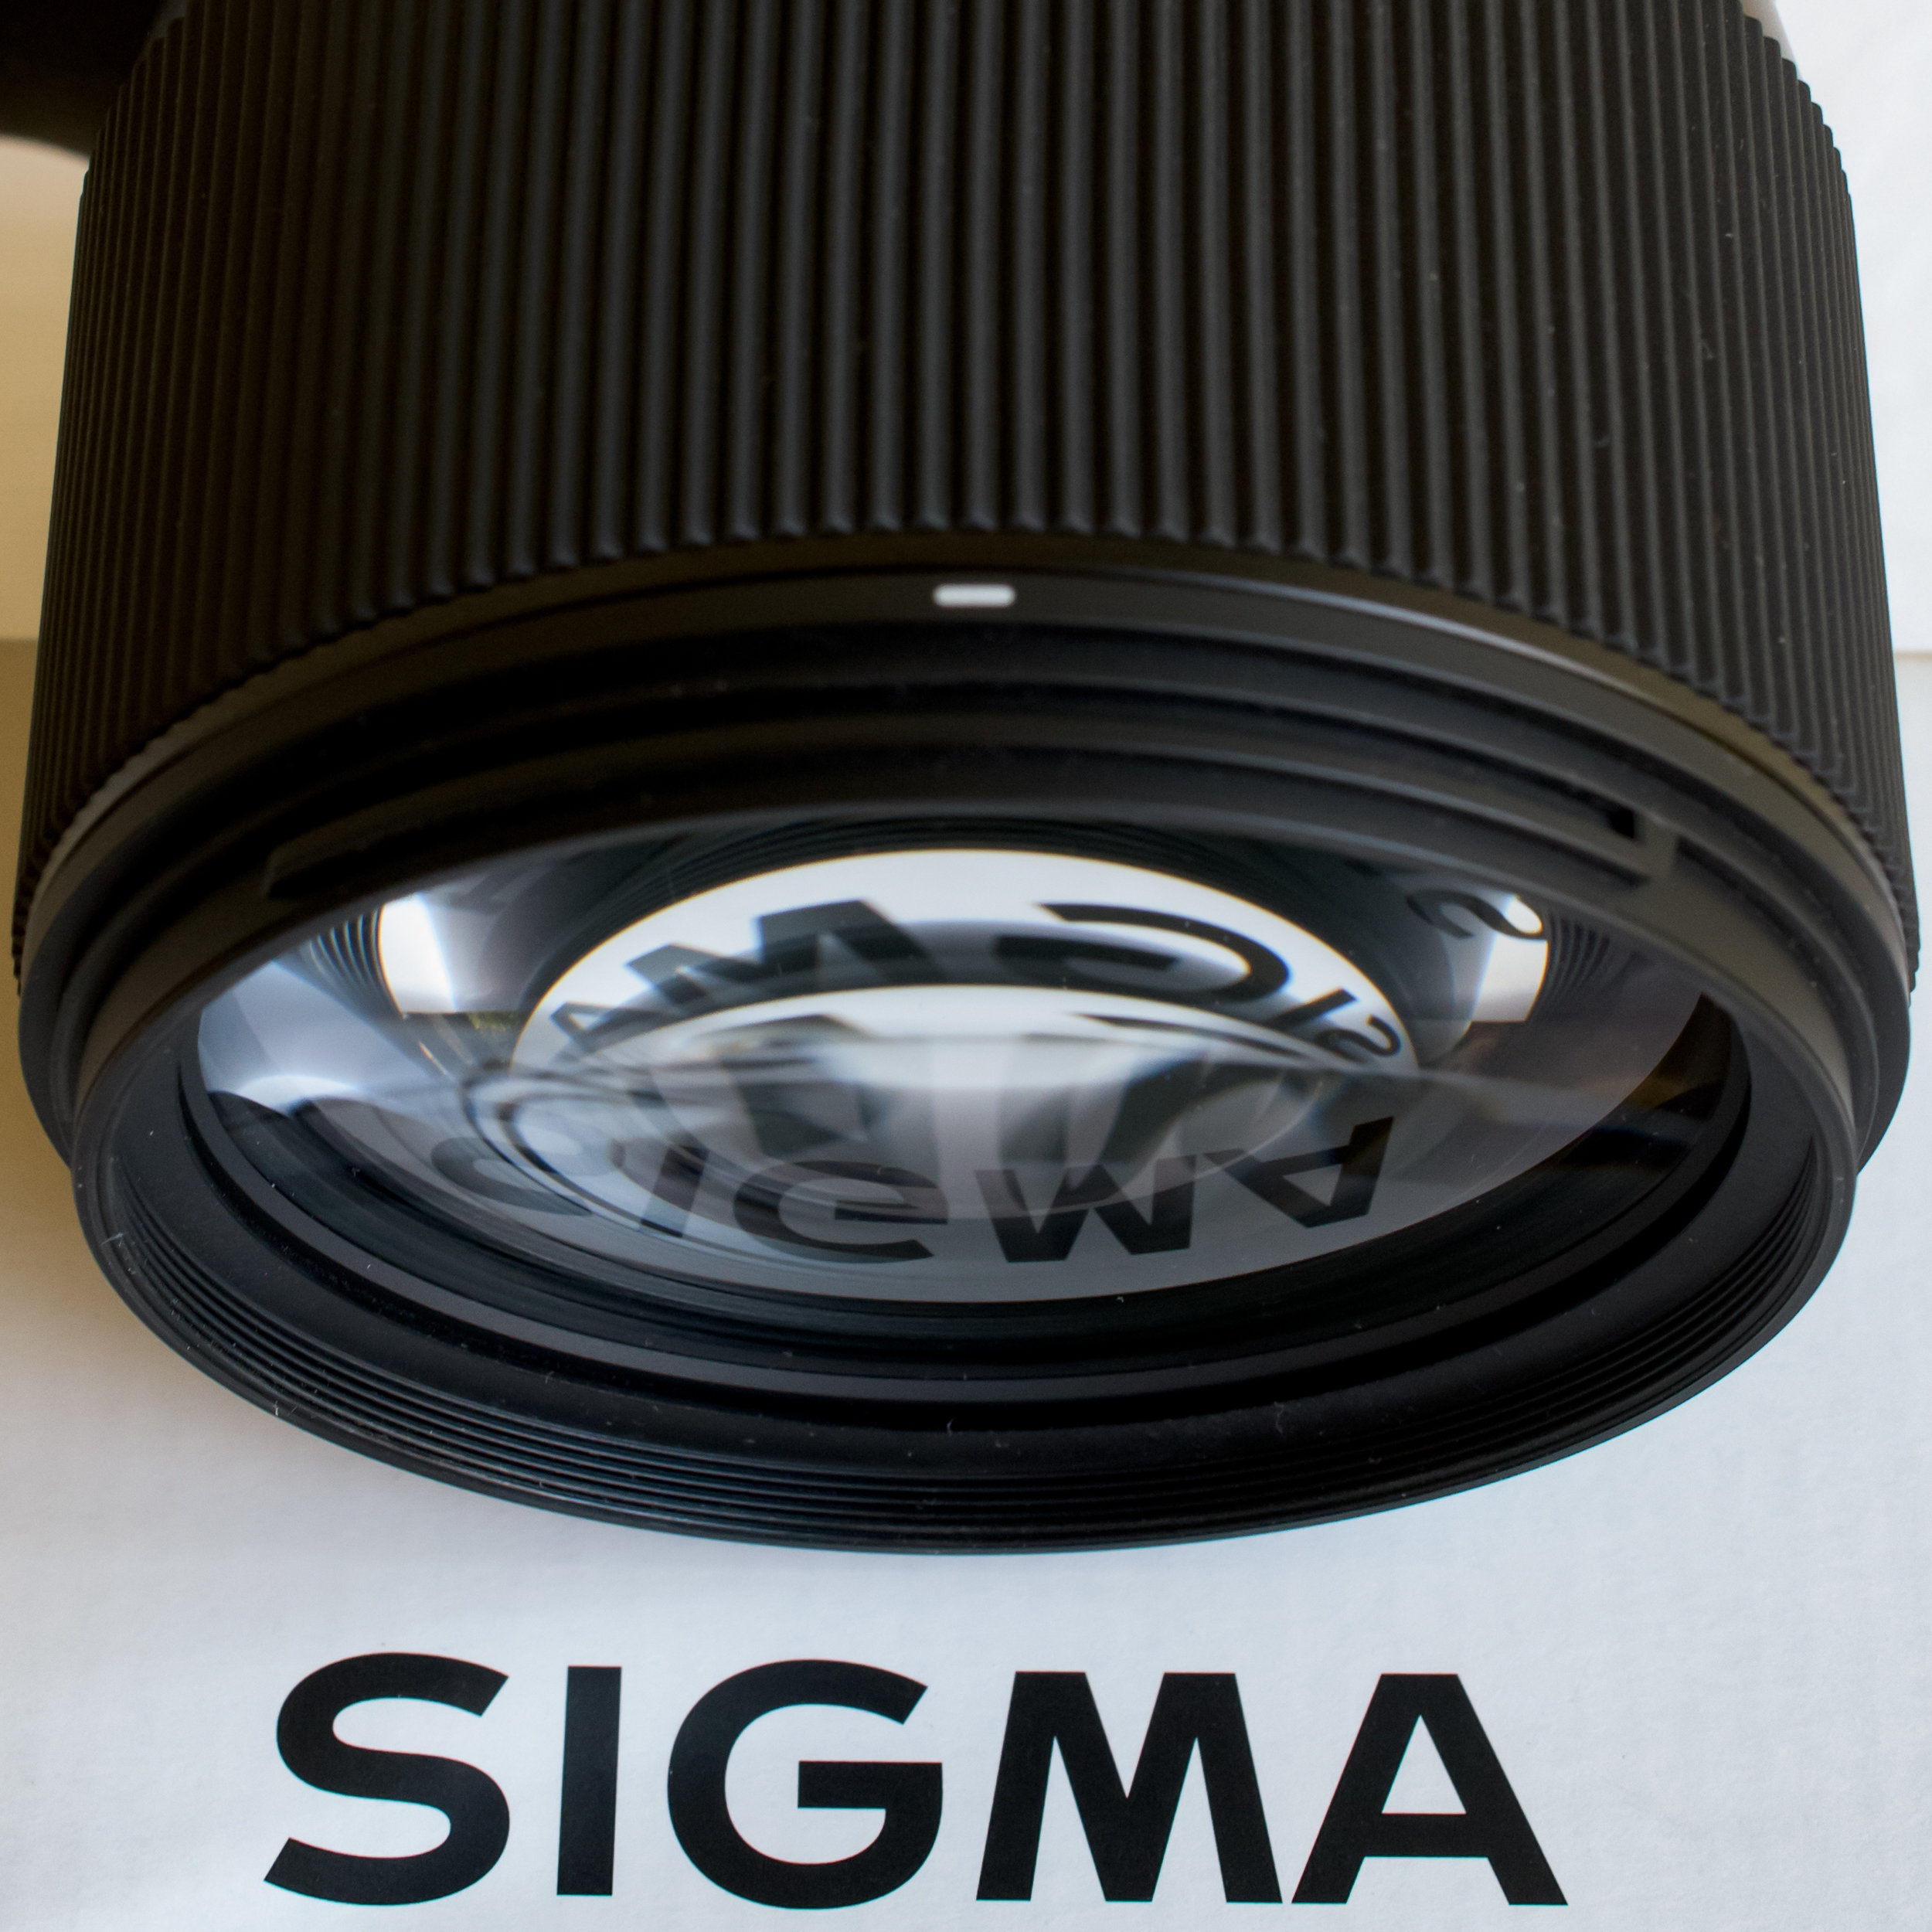 Maggiori informazioni su "Sigma 135mm f/1,8 Art: il Teatro della Vita"